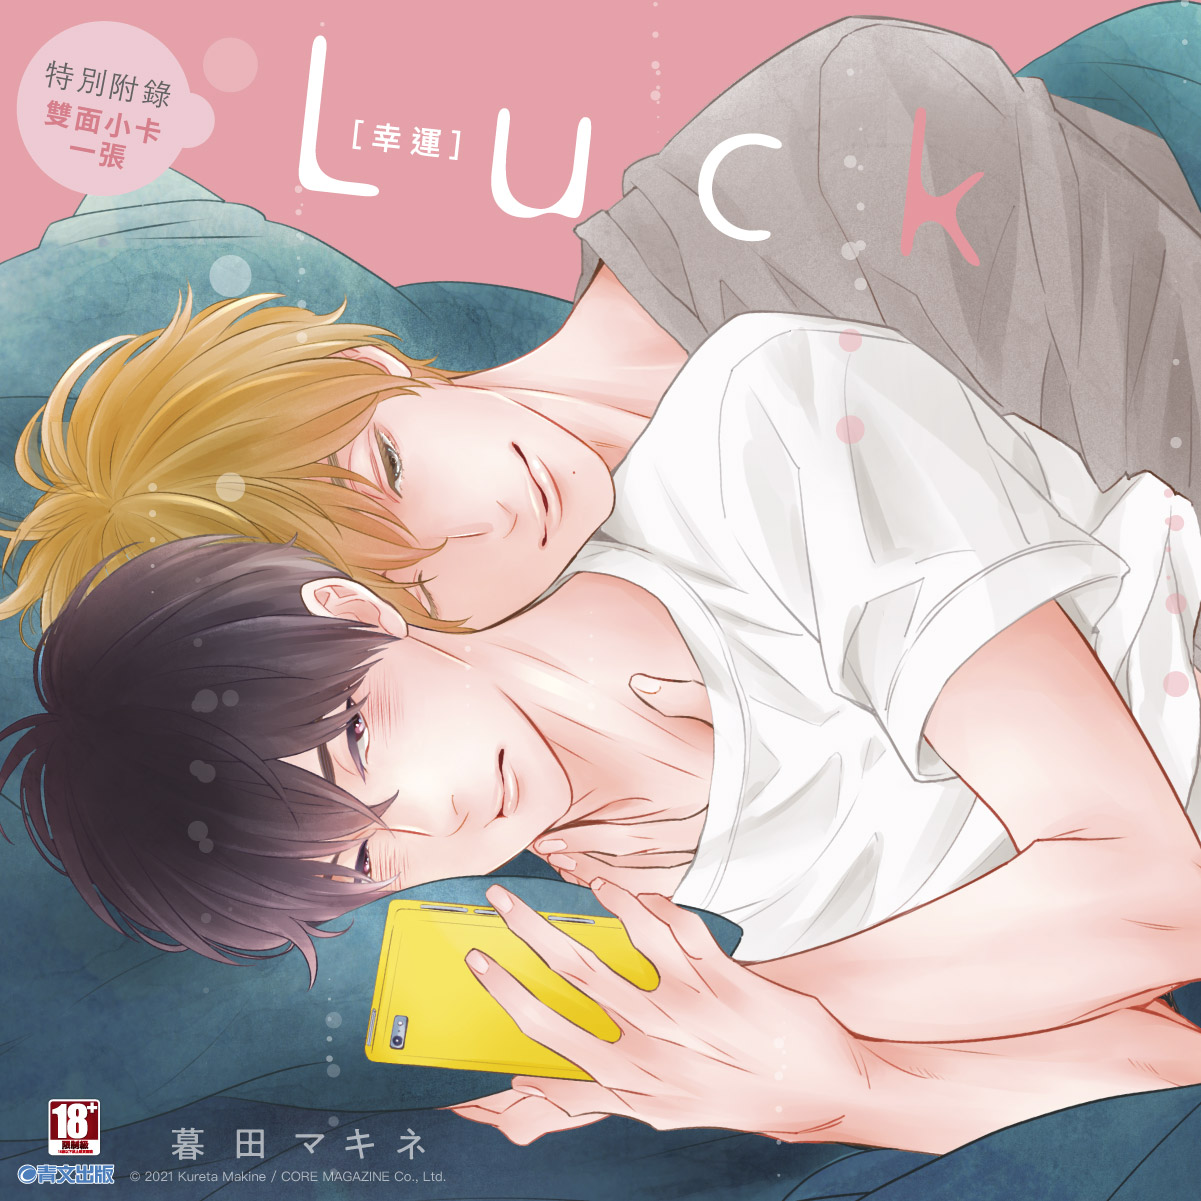 Luck [幸運](全)